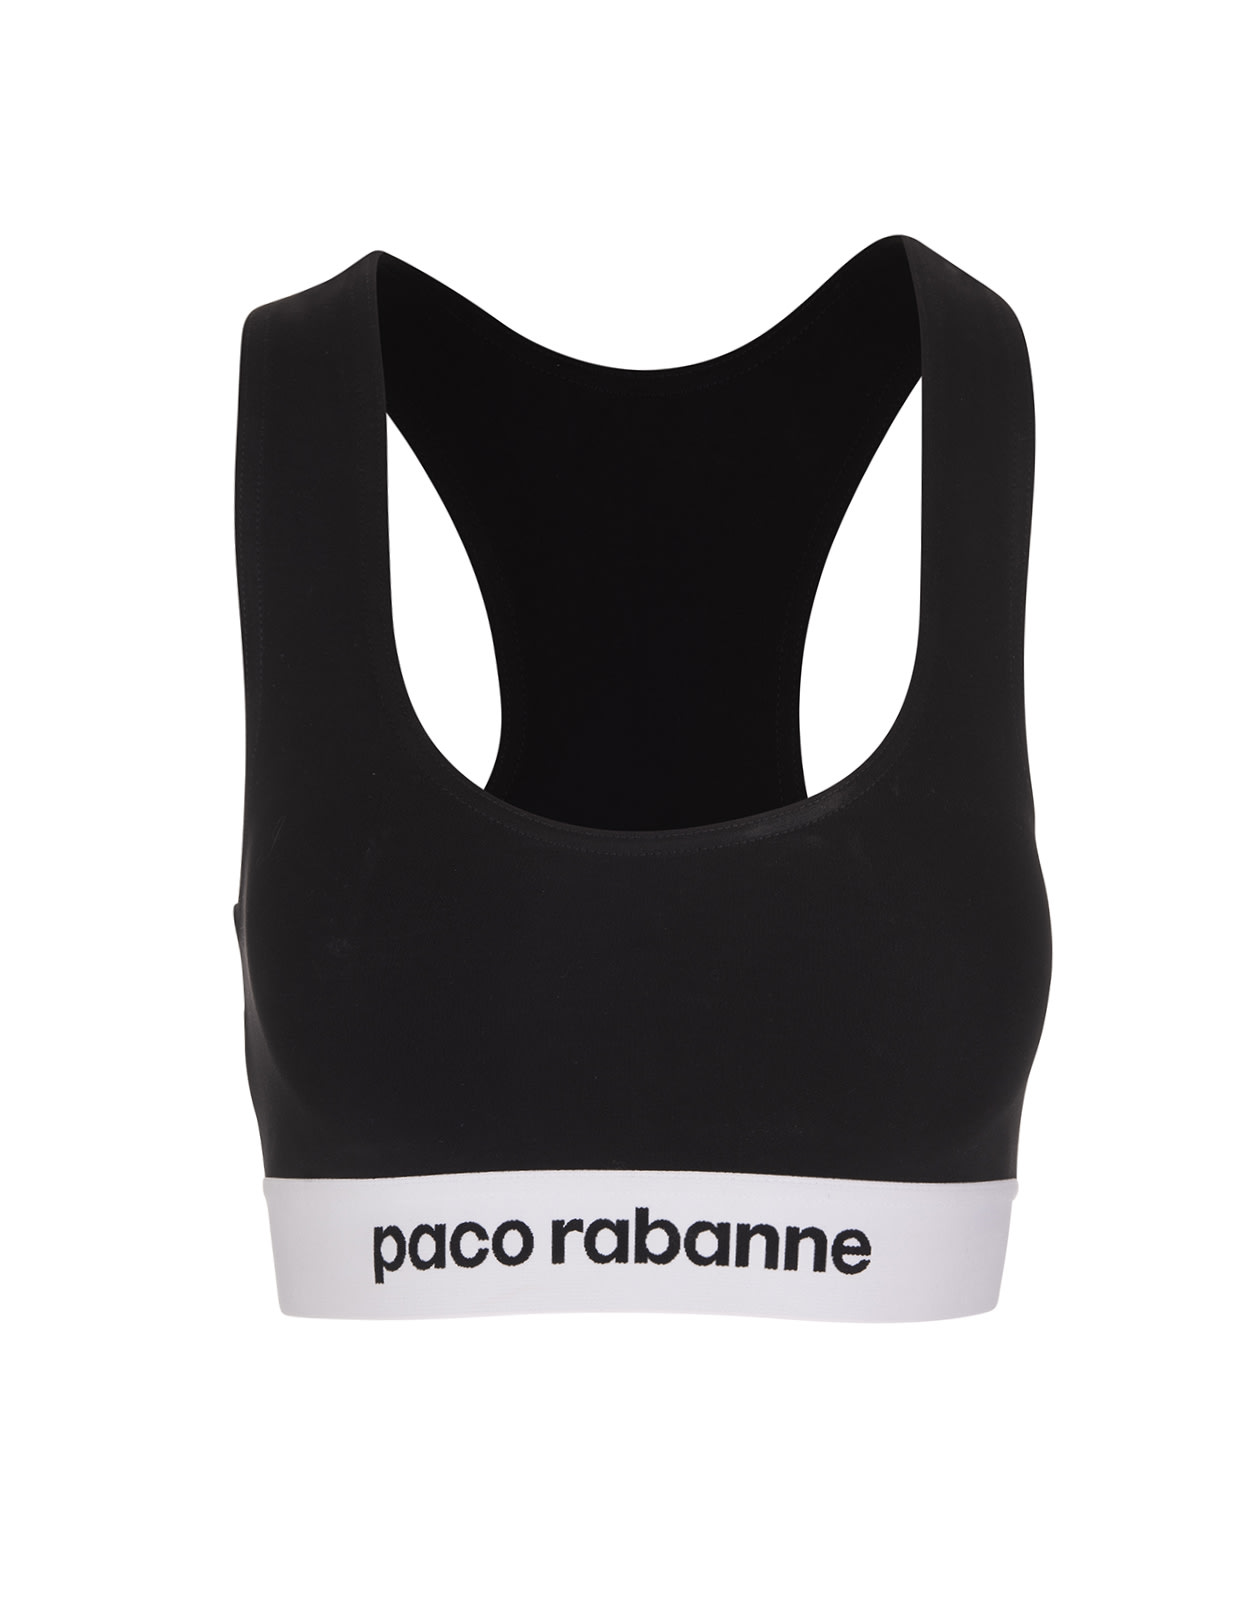 Paco Rabanne Black Short Top In Jersey Bodyline